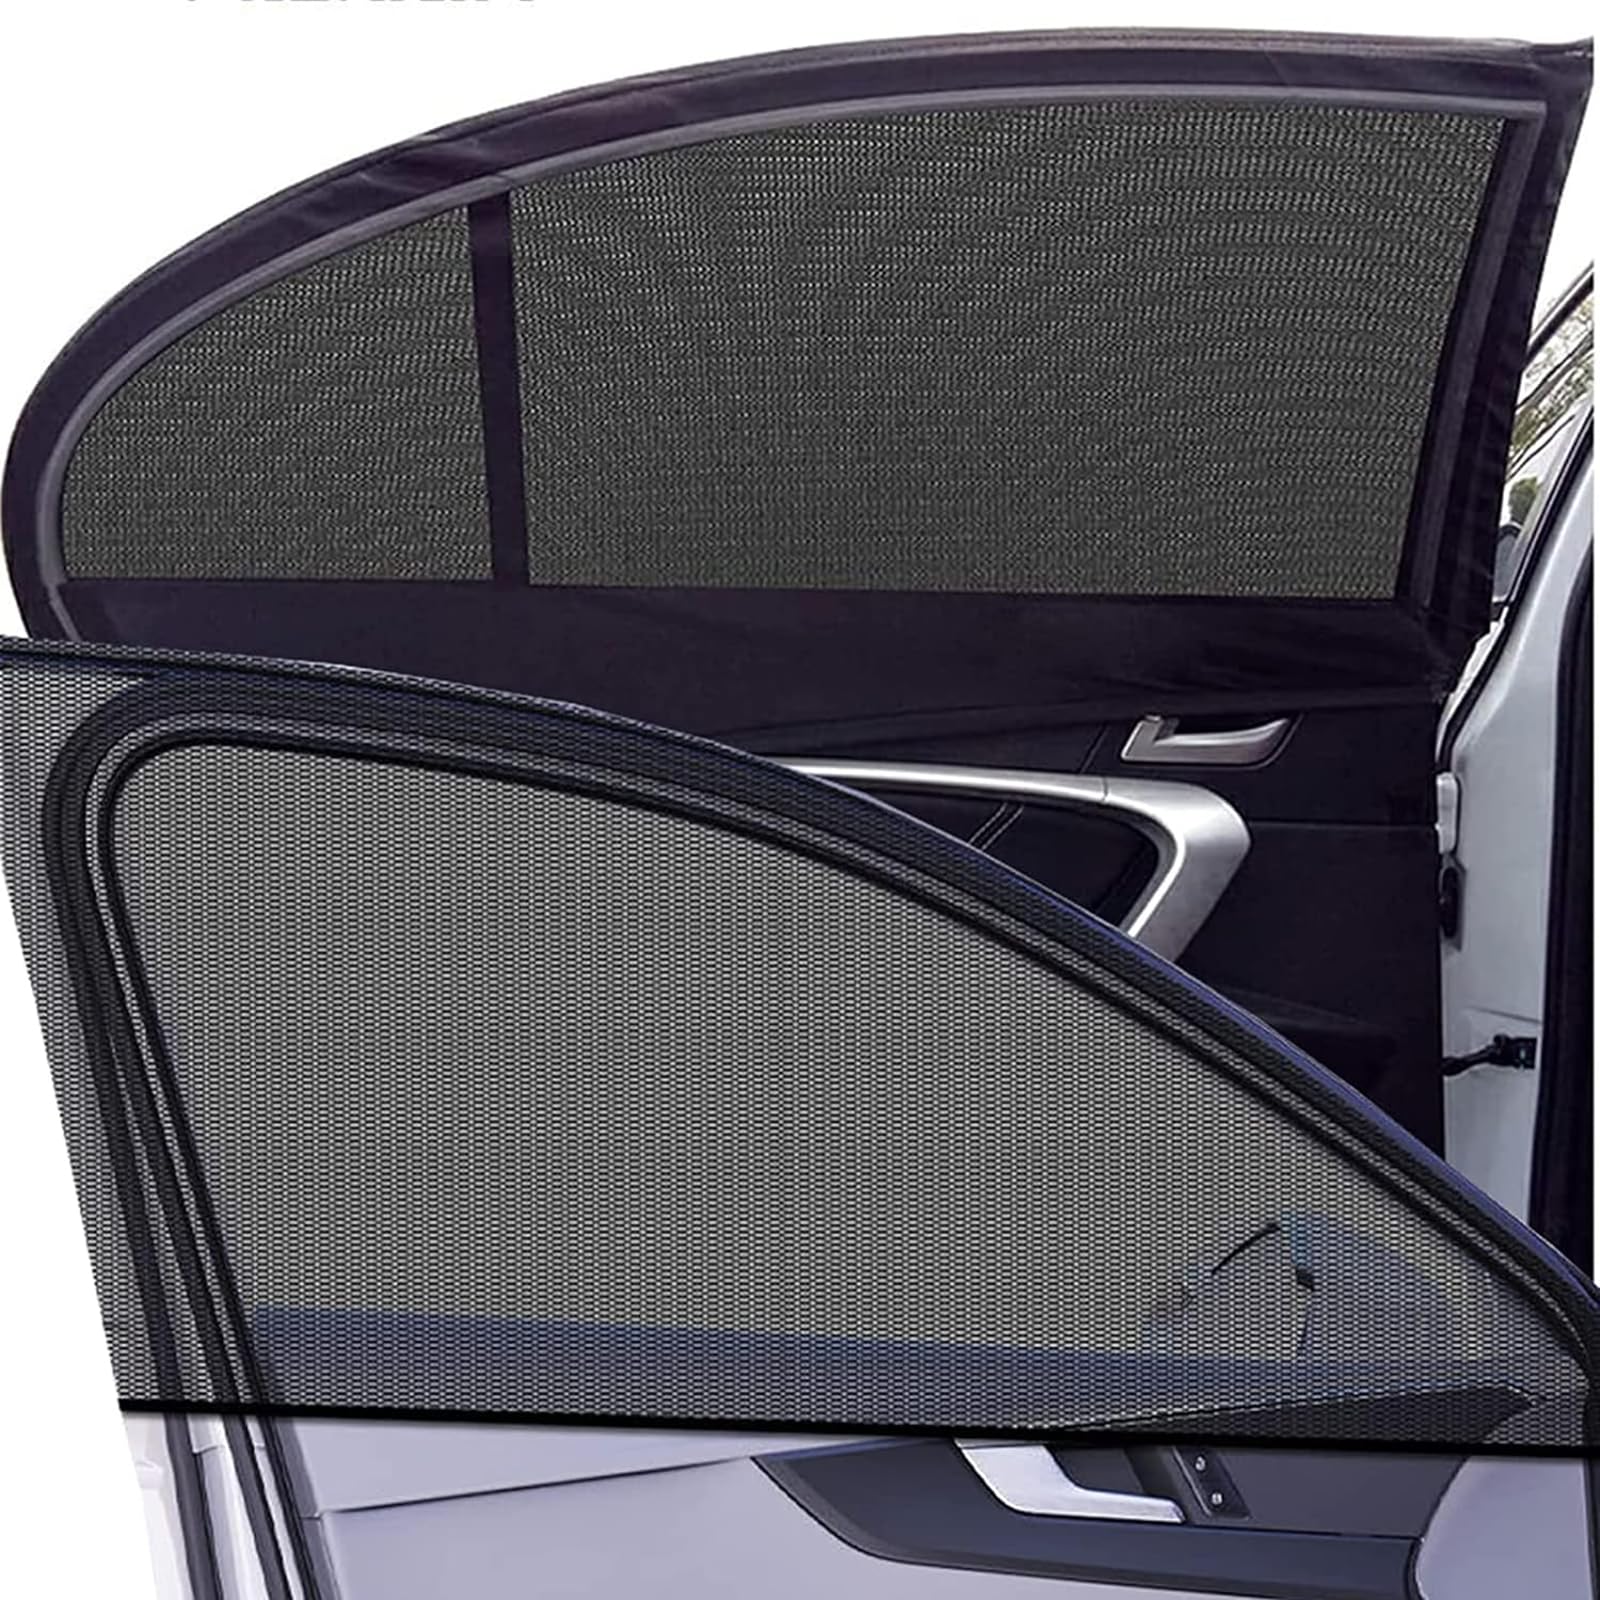 2 Stück Sonnenschutz Auto Baby Für Audi Q7 2016 2017 2018 2019 2020 2021 2022, Universal Auto Sonnenblende Seitenfenster Atmungsaktive Netz UV-Schutz und Hitzeschutz Zubehör von JJNIENUS